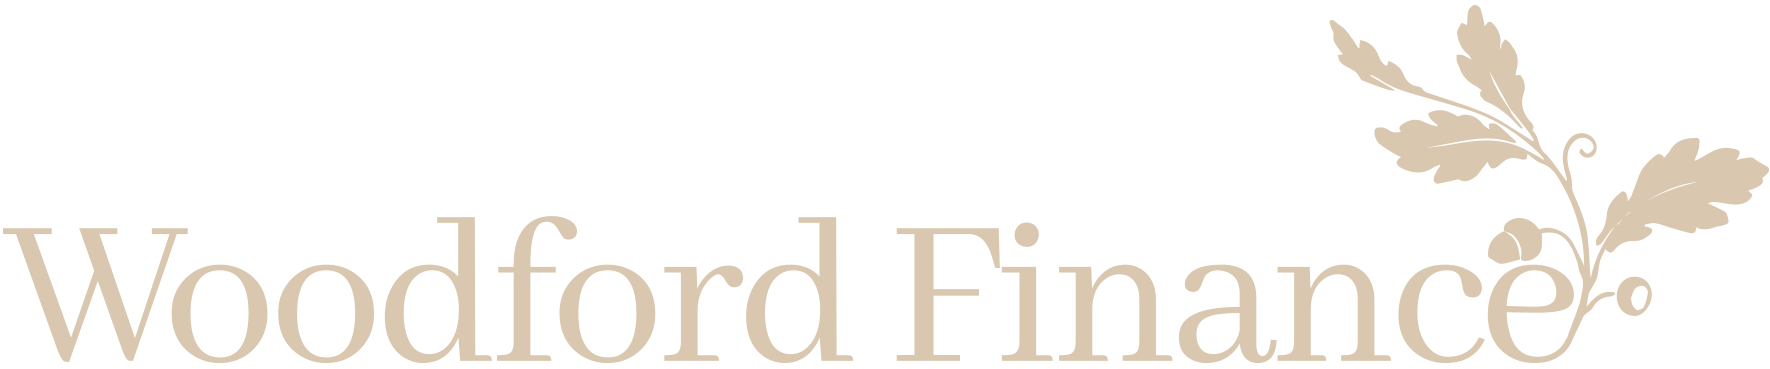 Woodford Finance